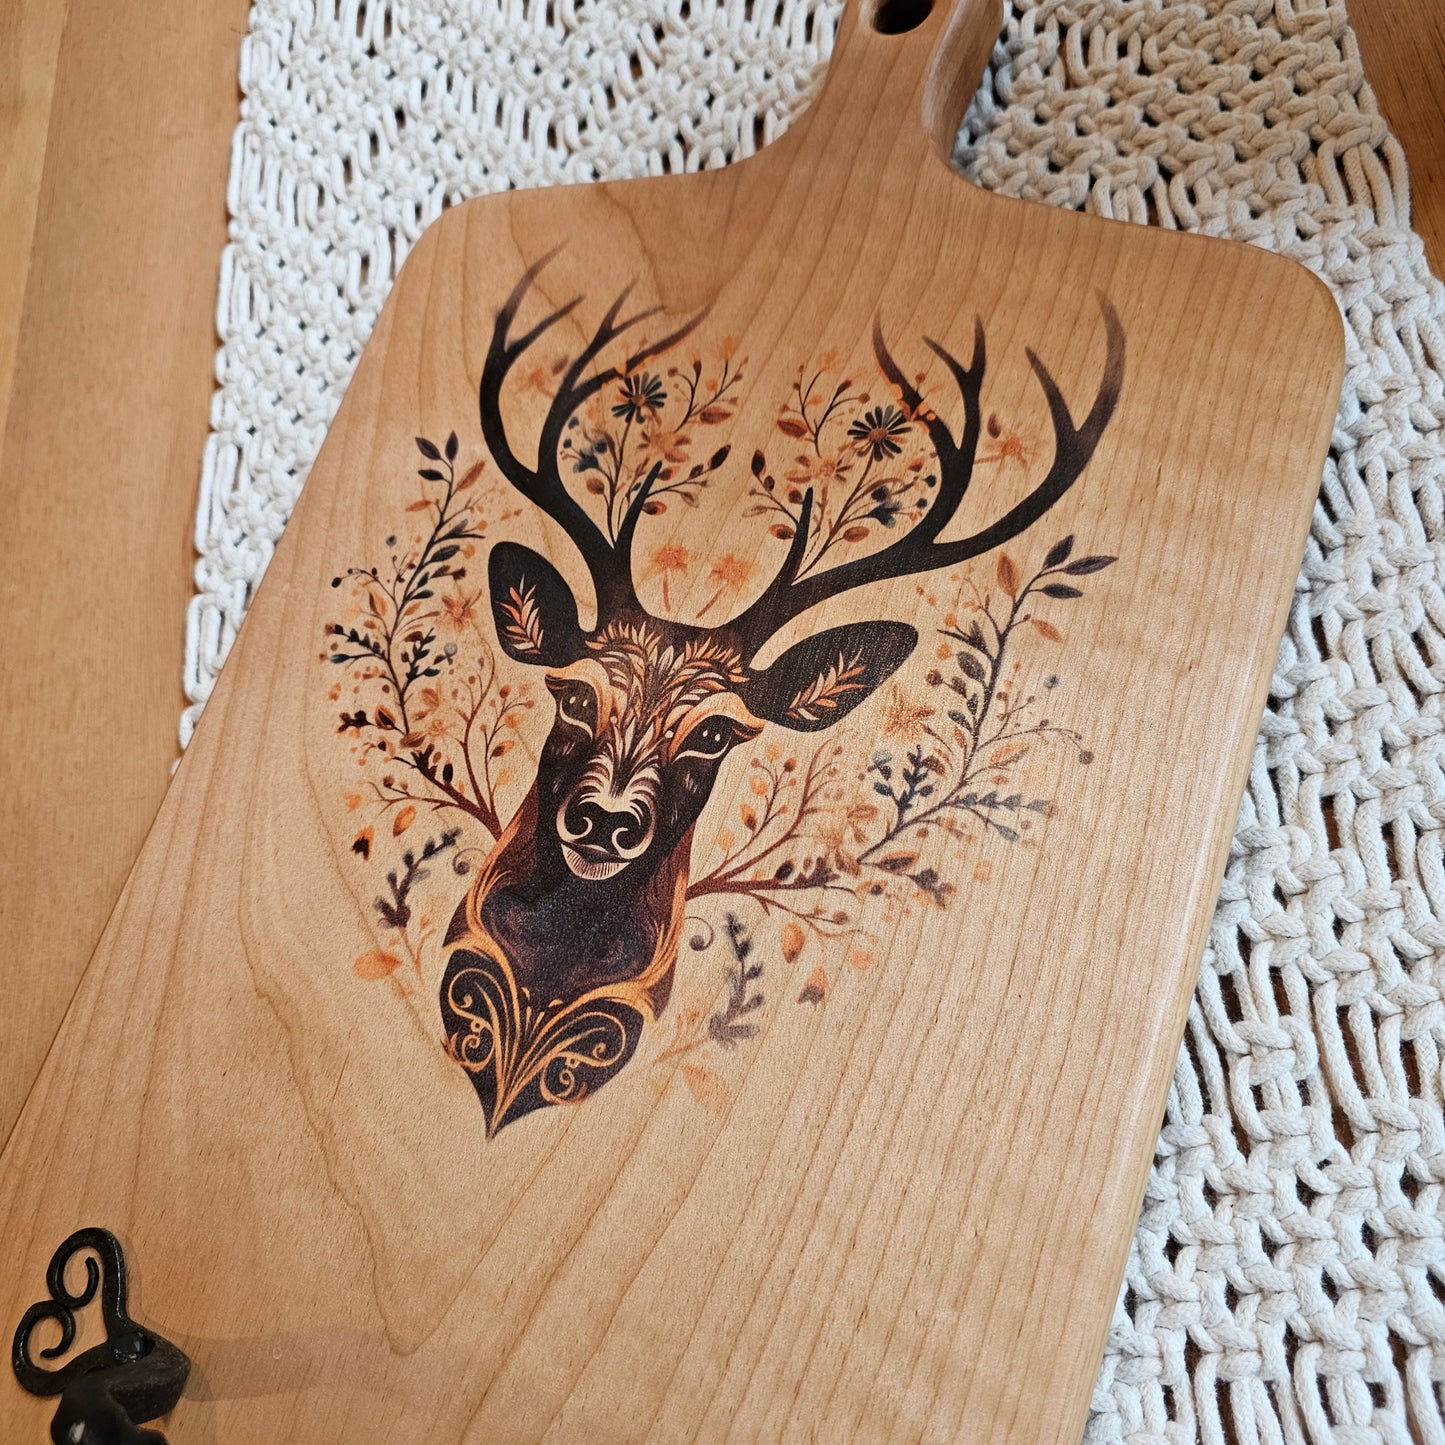 Cutting Board- Alder- 17.5 x 10- Scandinavian Folk Art- Deer